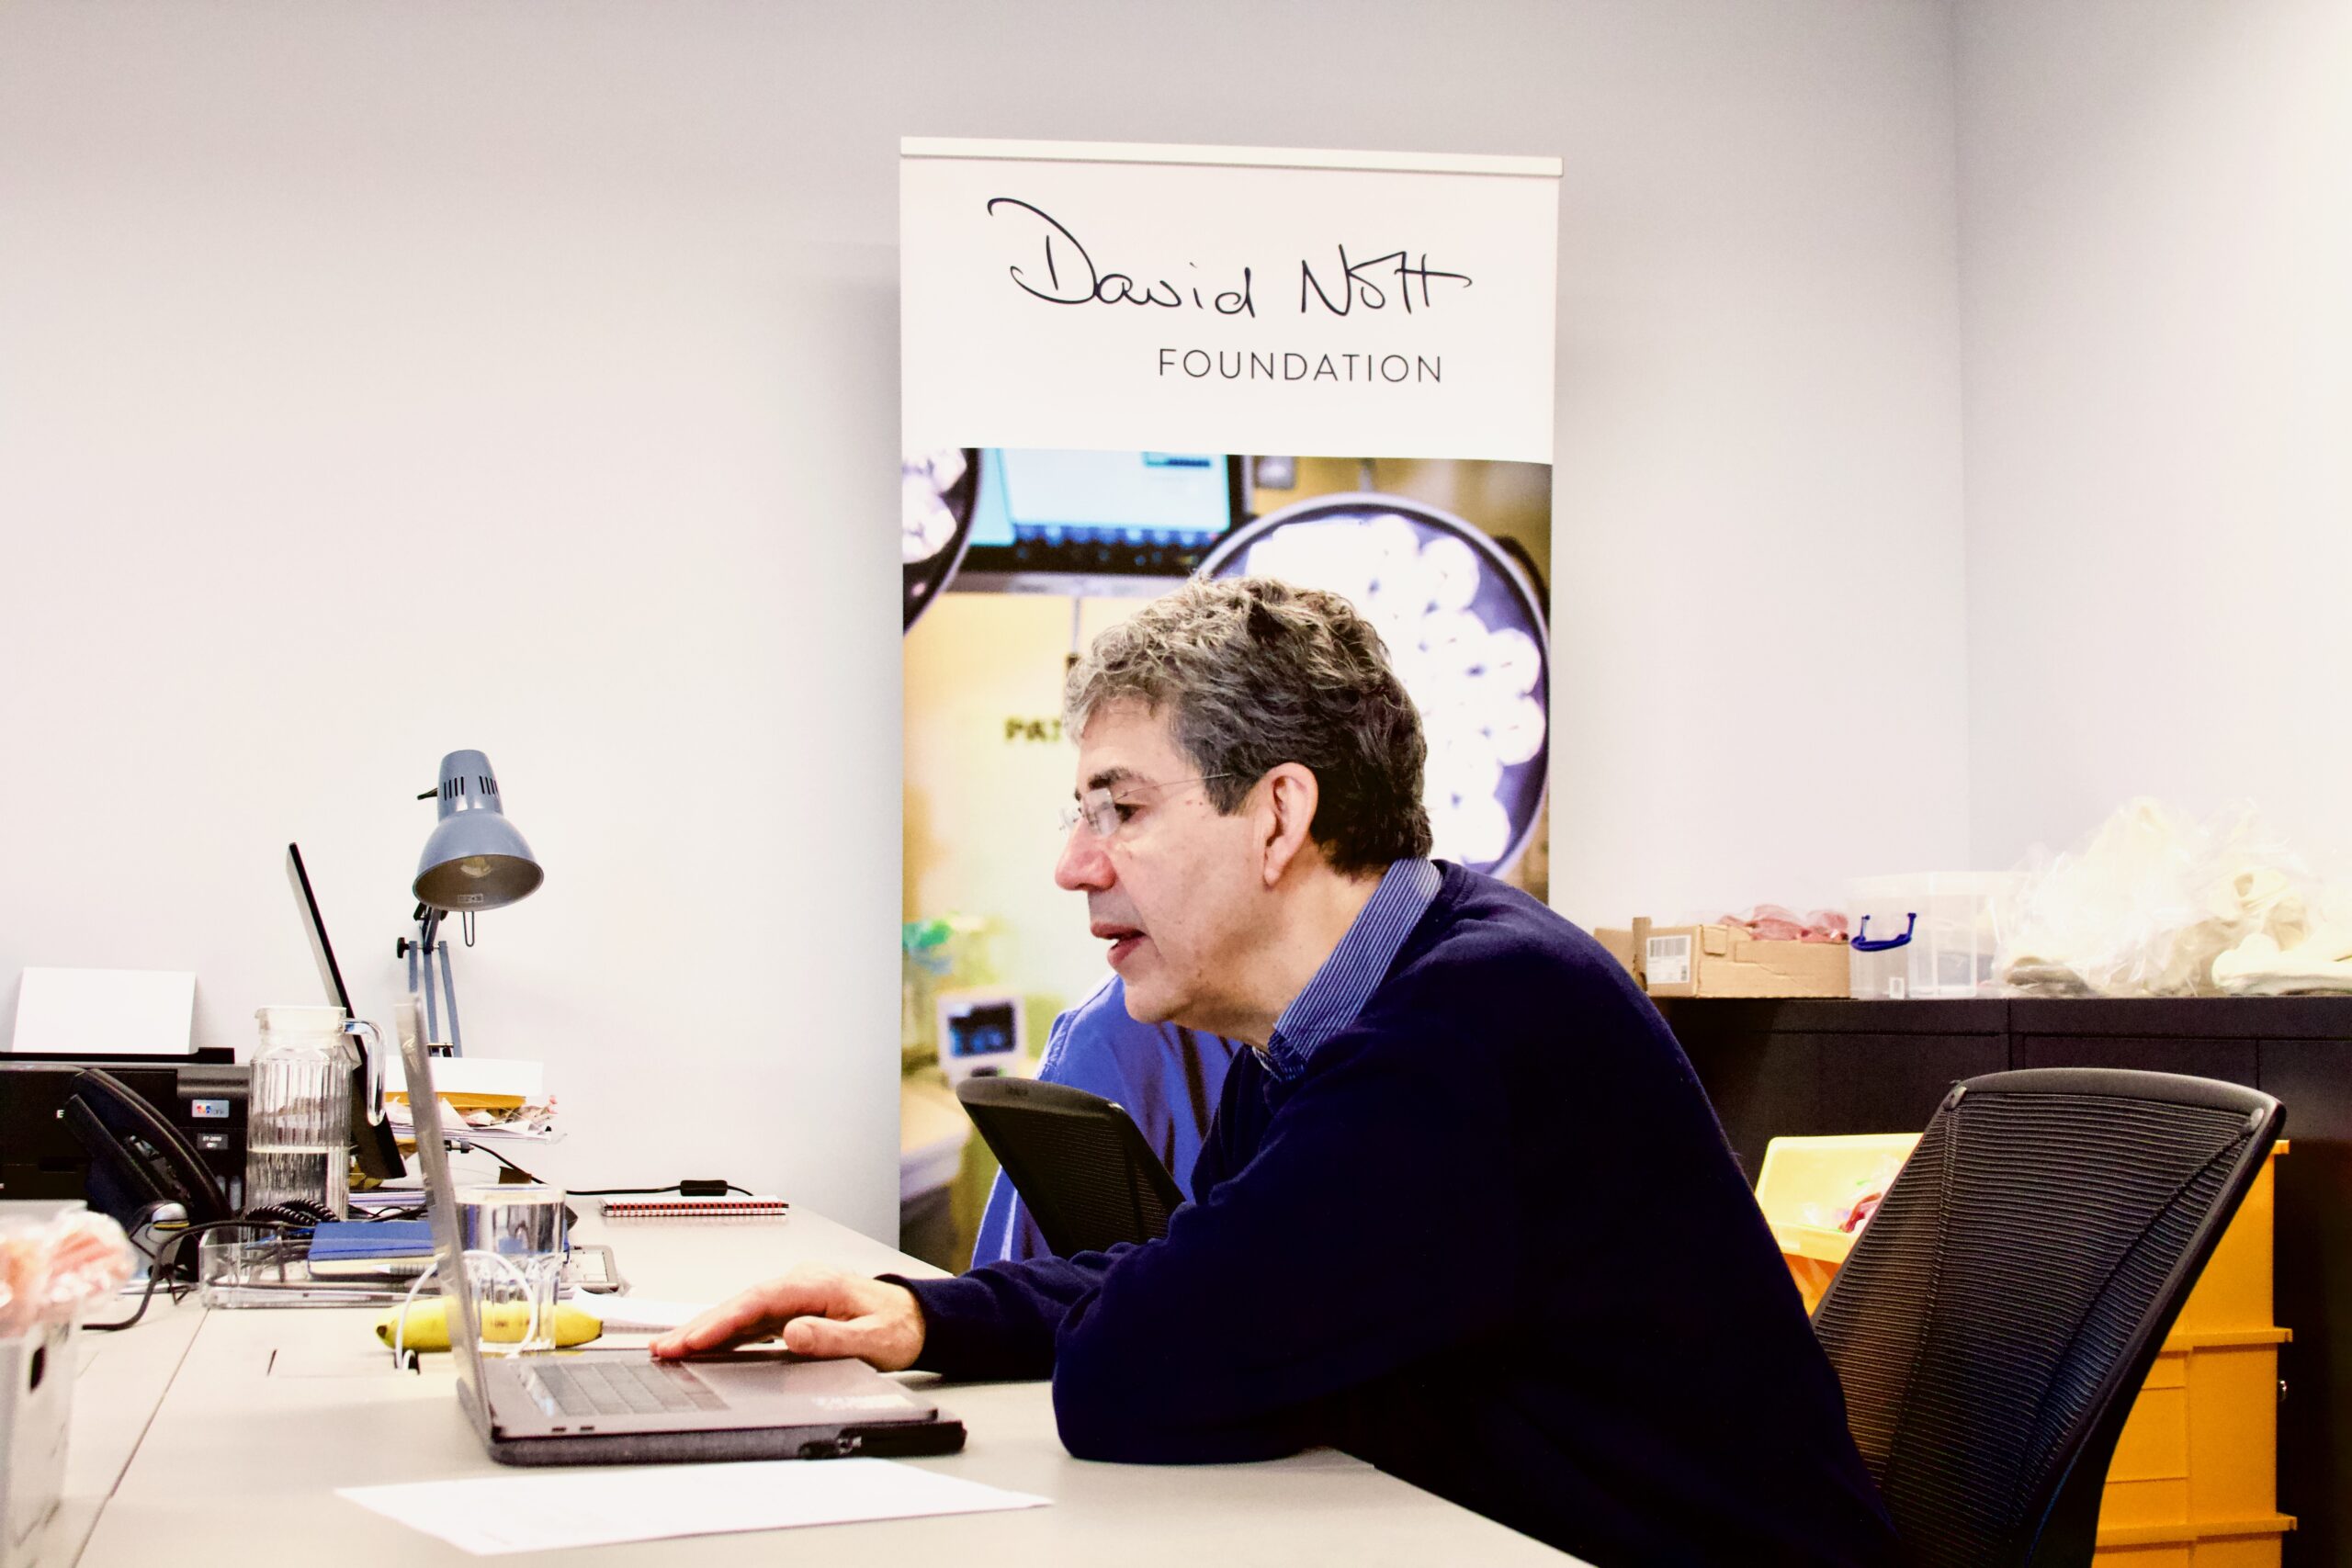 David Nott delivering surgical training online.